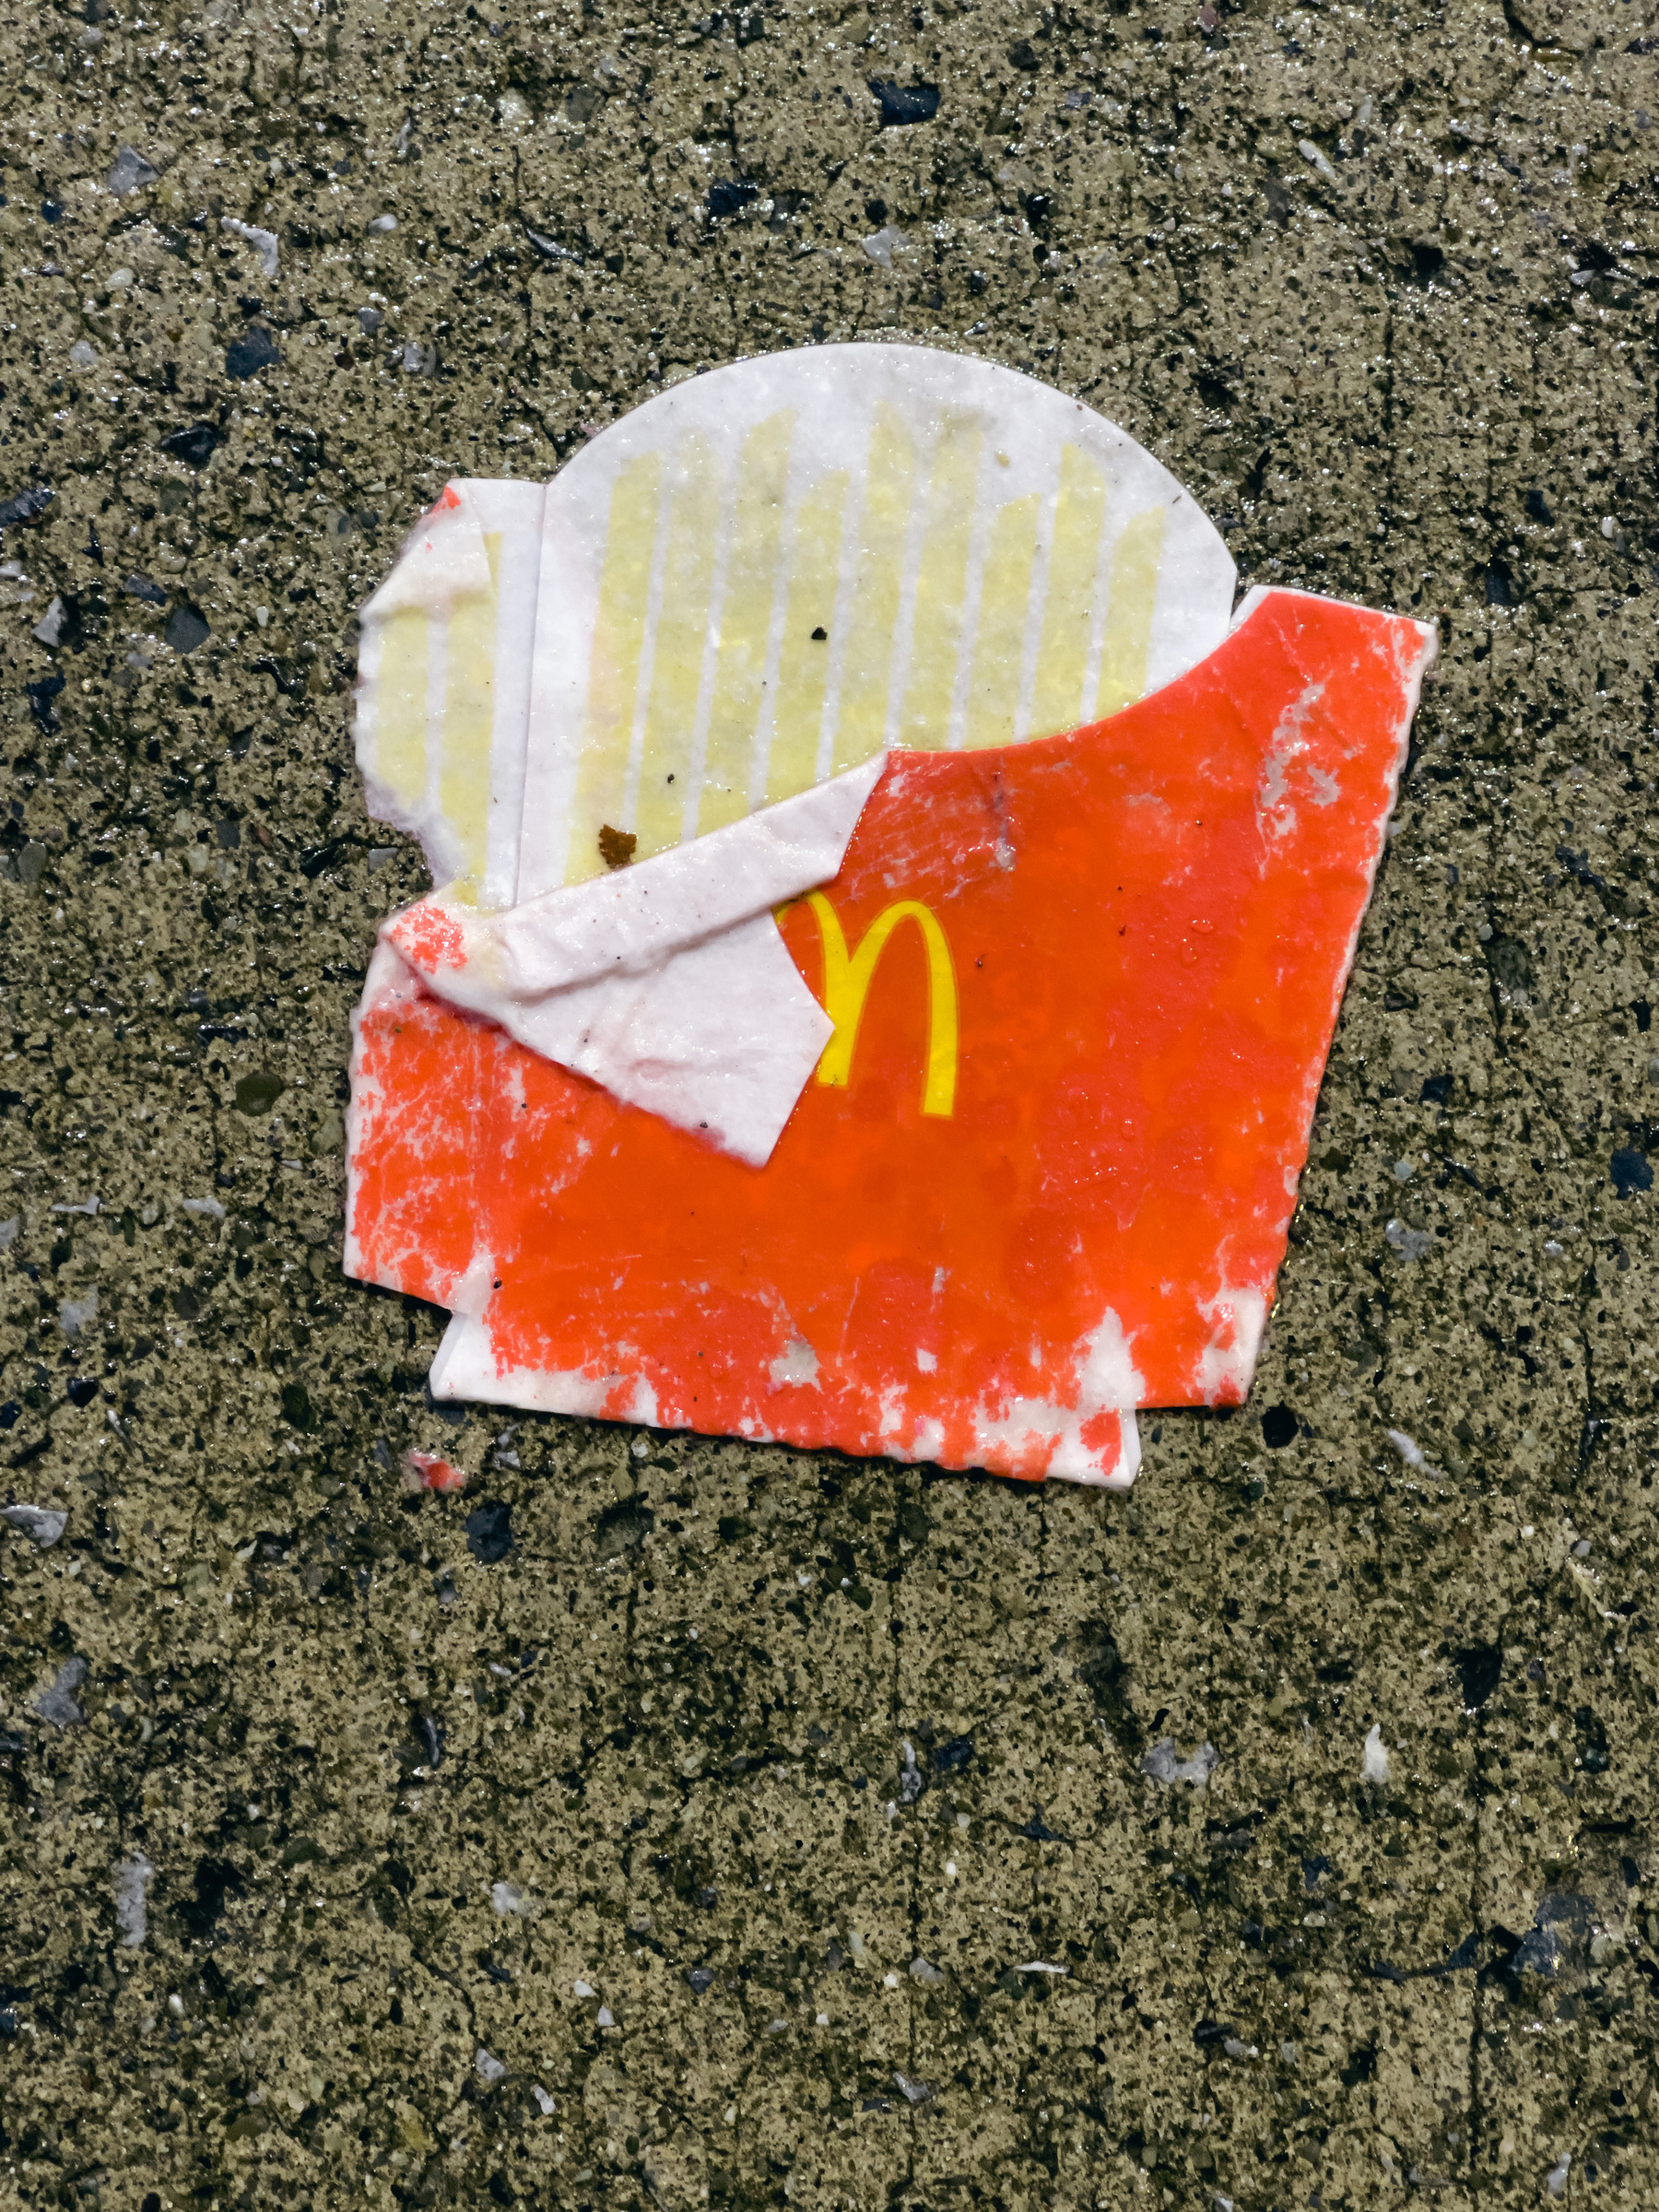 McDonald’s fries box on concrete pavement.